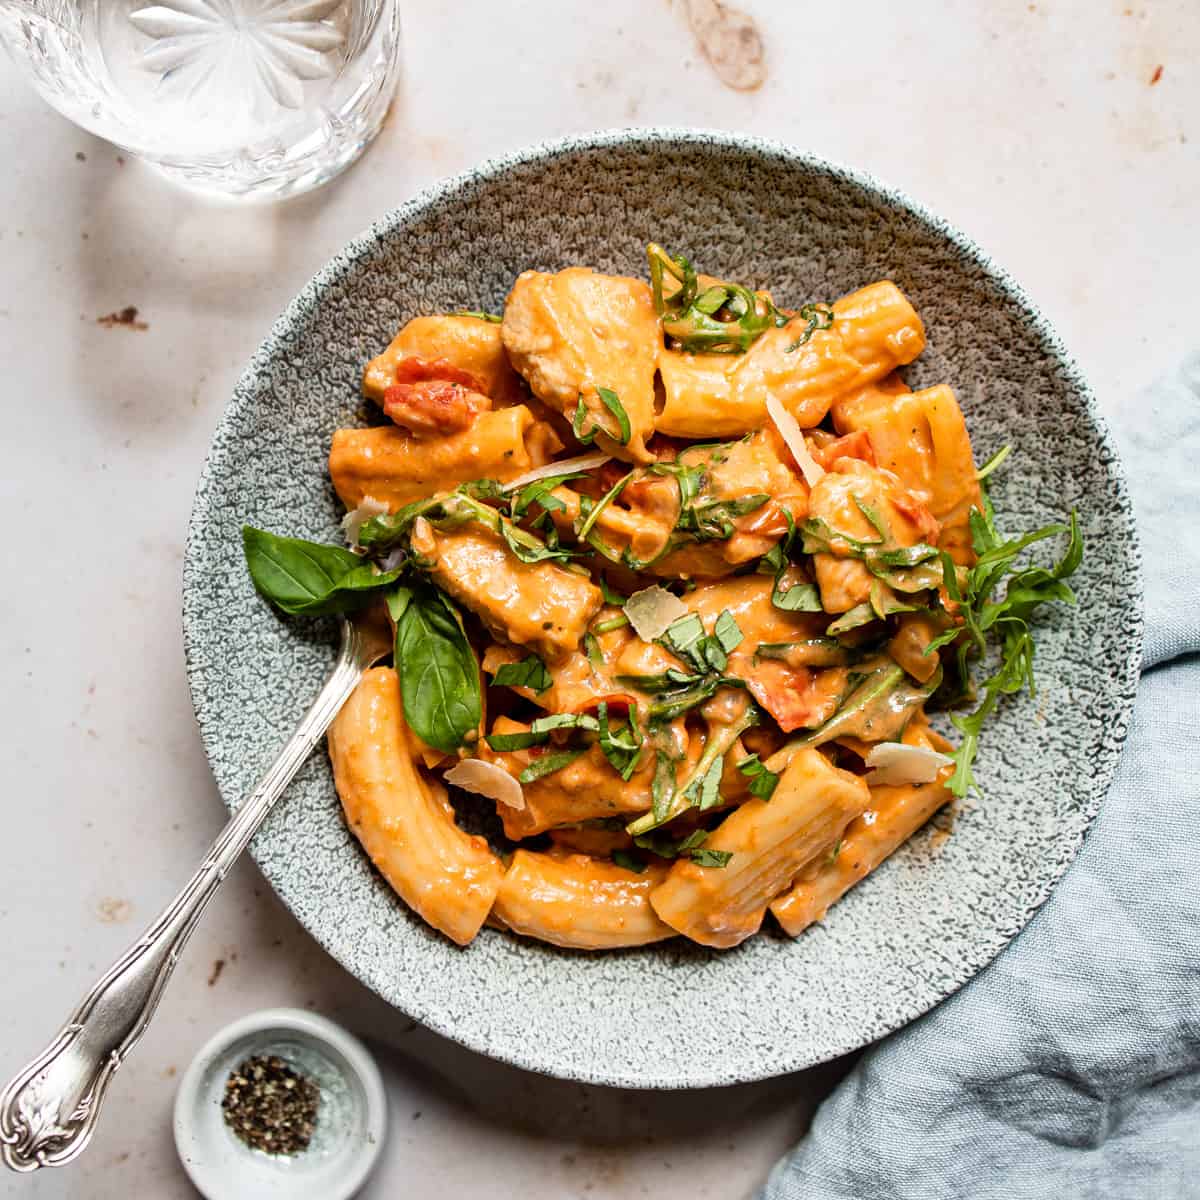 Creamy tomato chicken pasta in a green bowl- Aldi chicken recipes